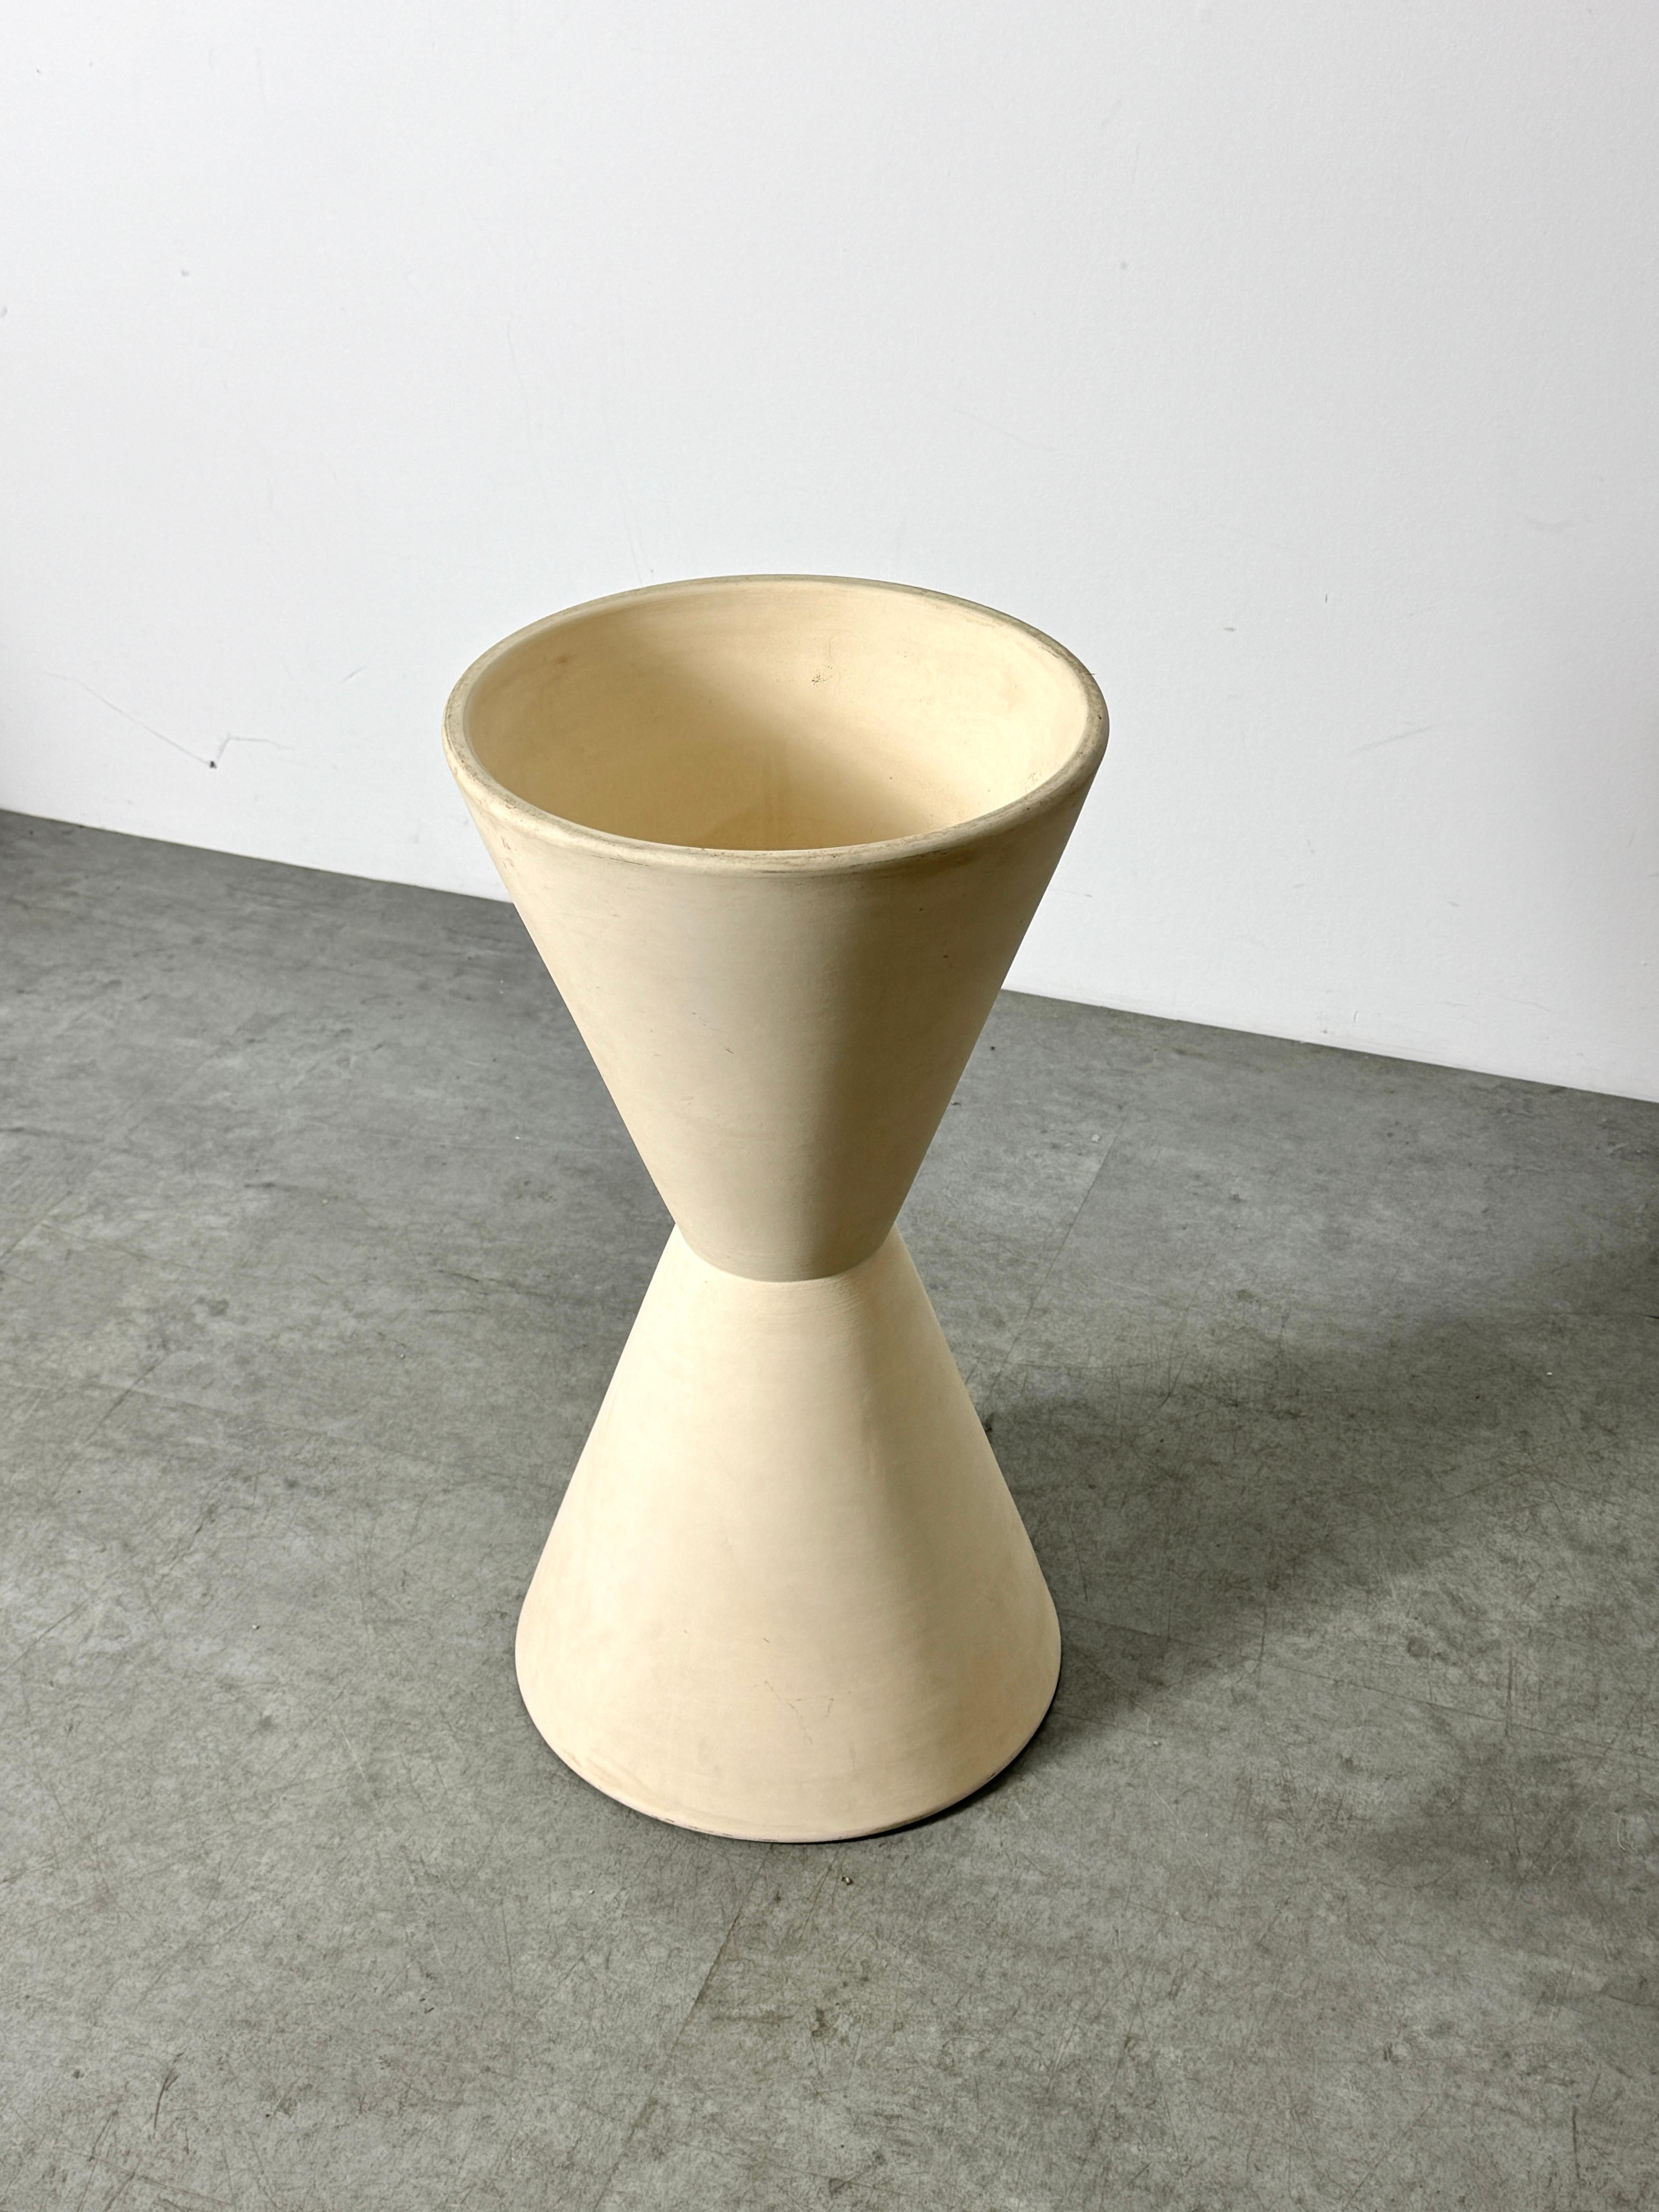 American Lagardo Tackett Architectural Pottery Double Cone Planter Bisque Ceramic 1950s For Sale